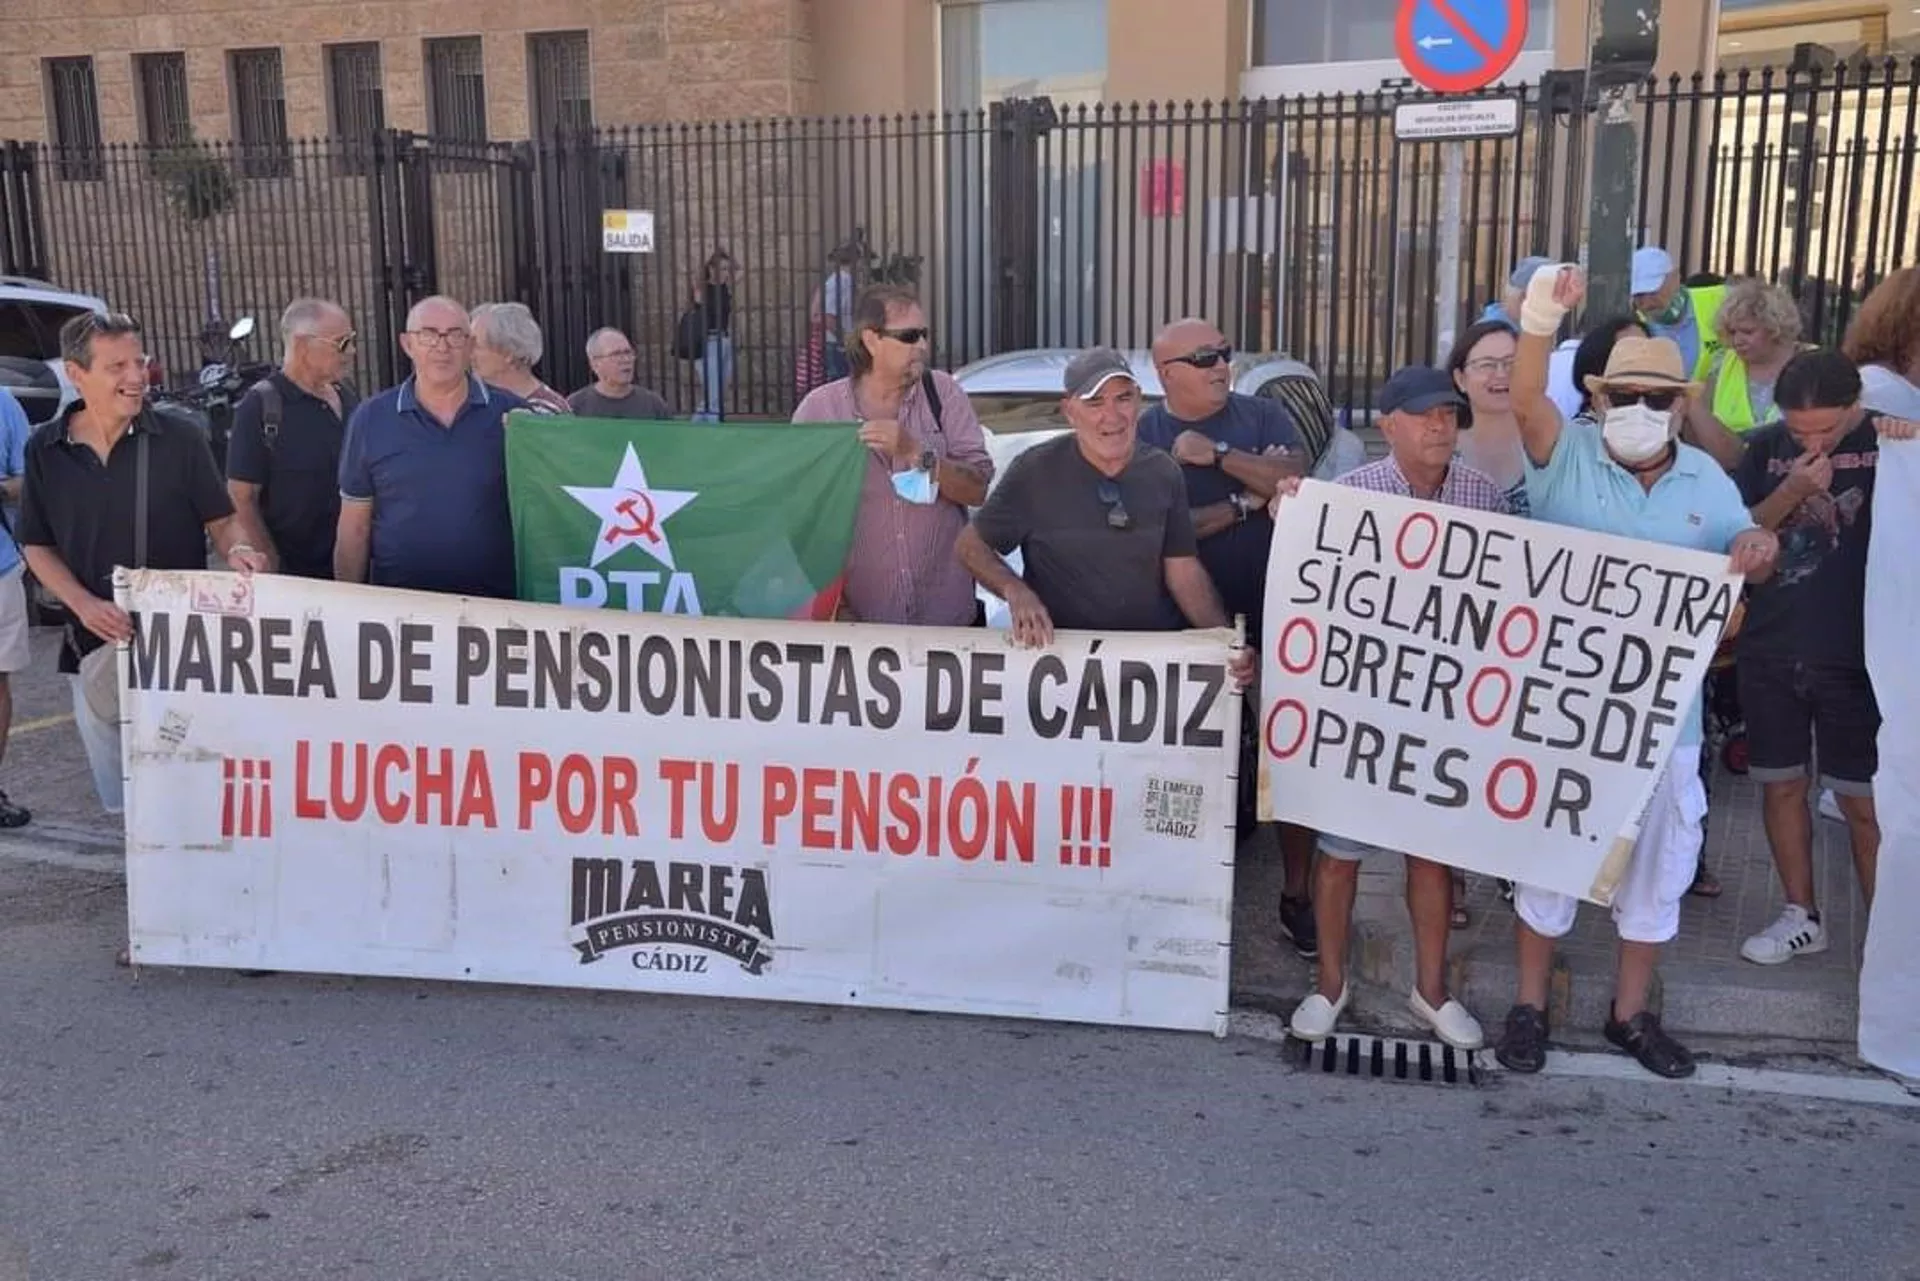 La forman, entre otros, trabajadores del metal de Cádiz, pensionistas, colectivos de fútbol, sindicatos y asociaciones